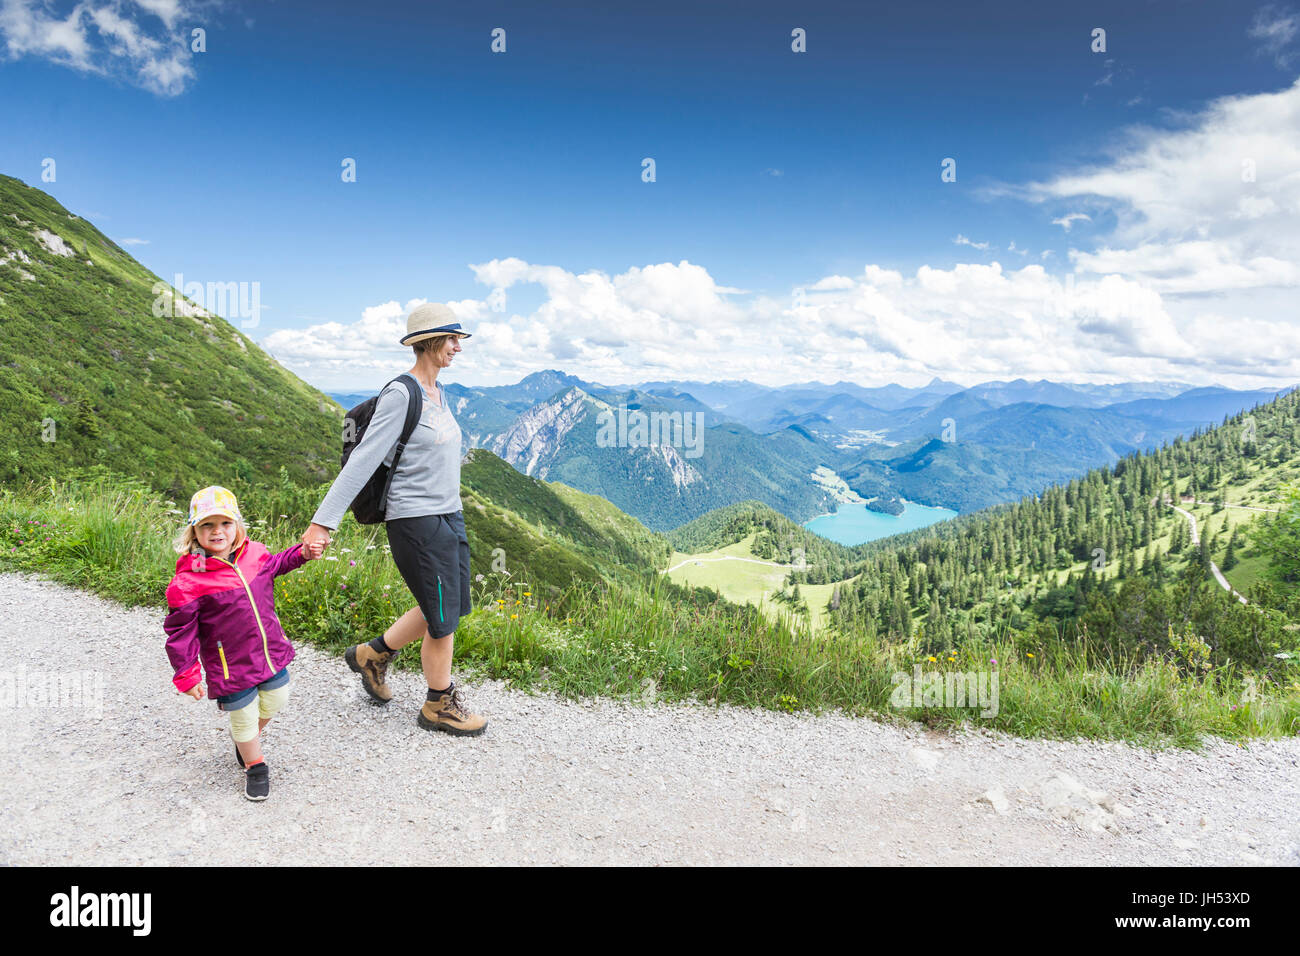 Mutter und Tochter auf einer Bergwanderung Stock Photo